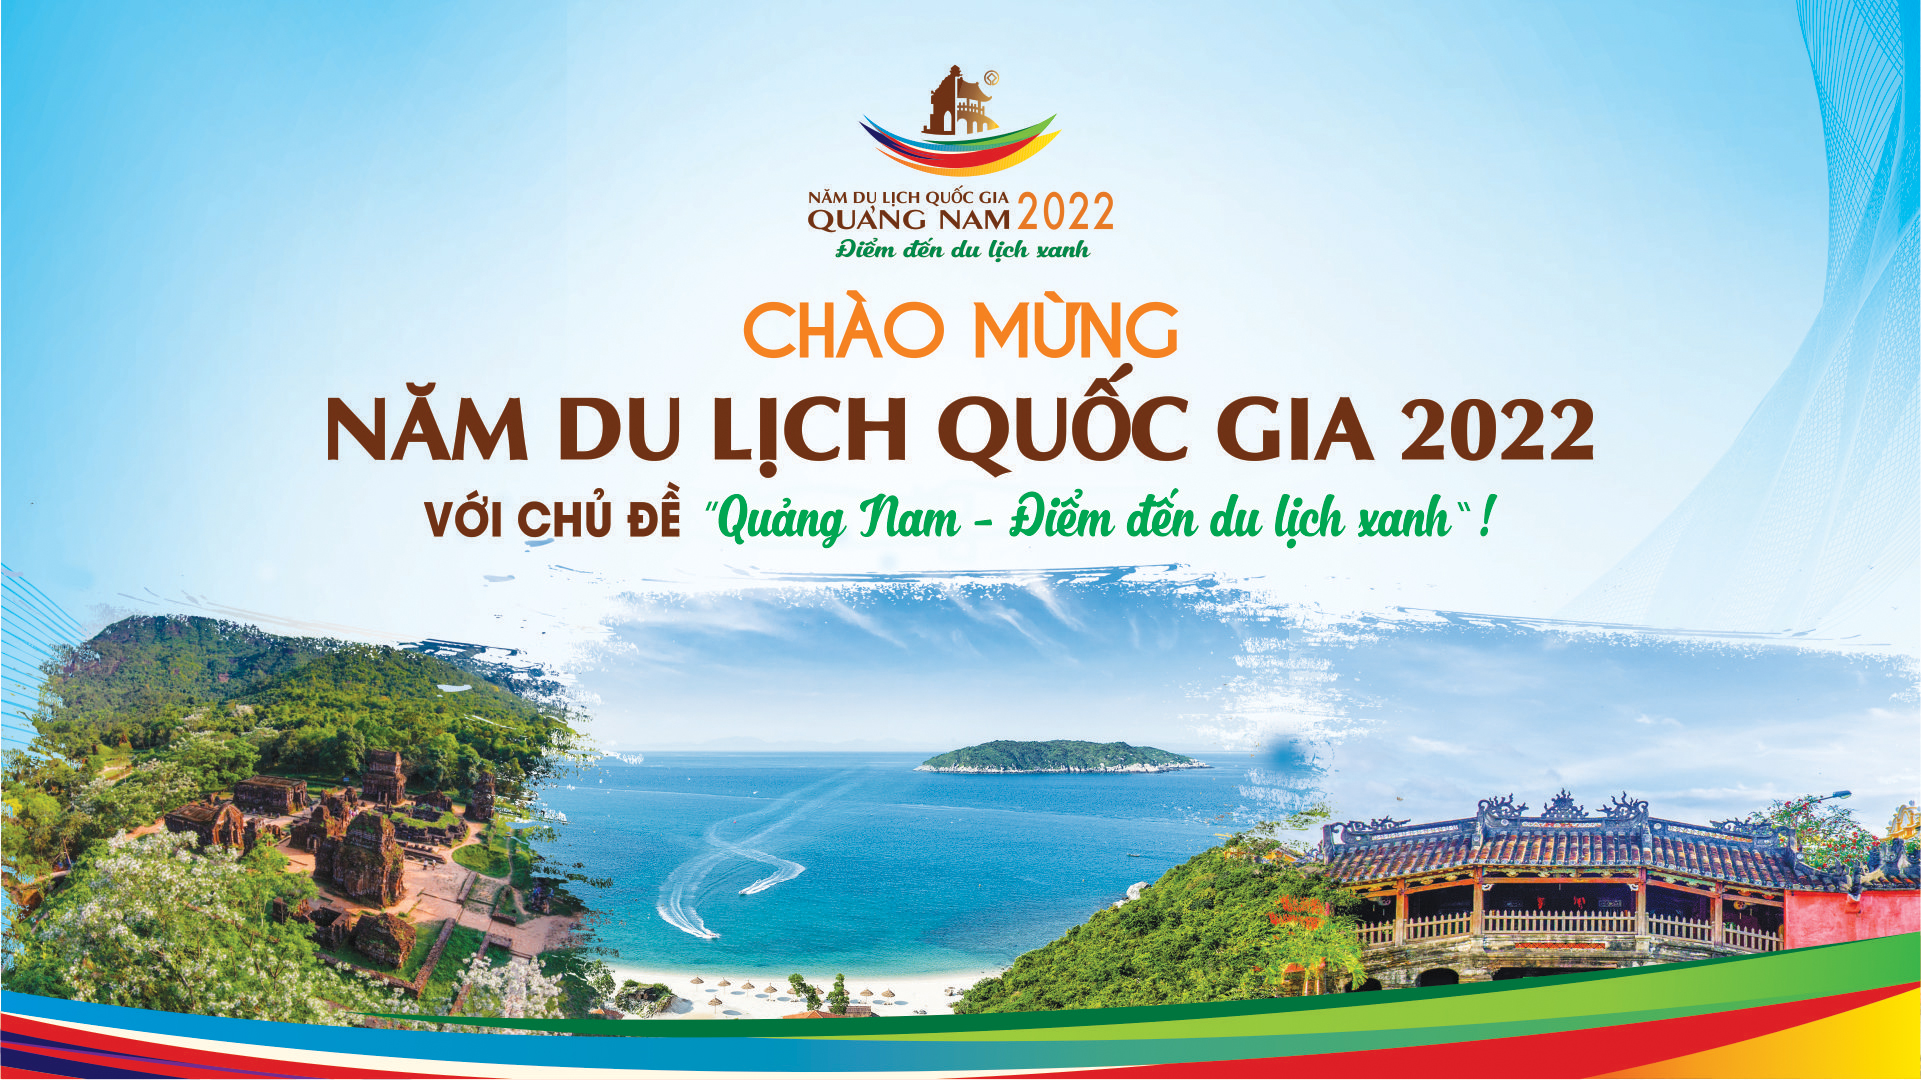 Năm Du lịch Quốc gia - Quảng Nam 2022 “Quảng Nam - Điểm đến du lịch xanh”